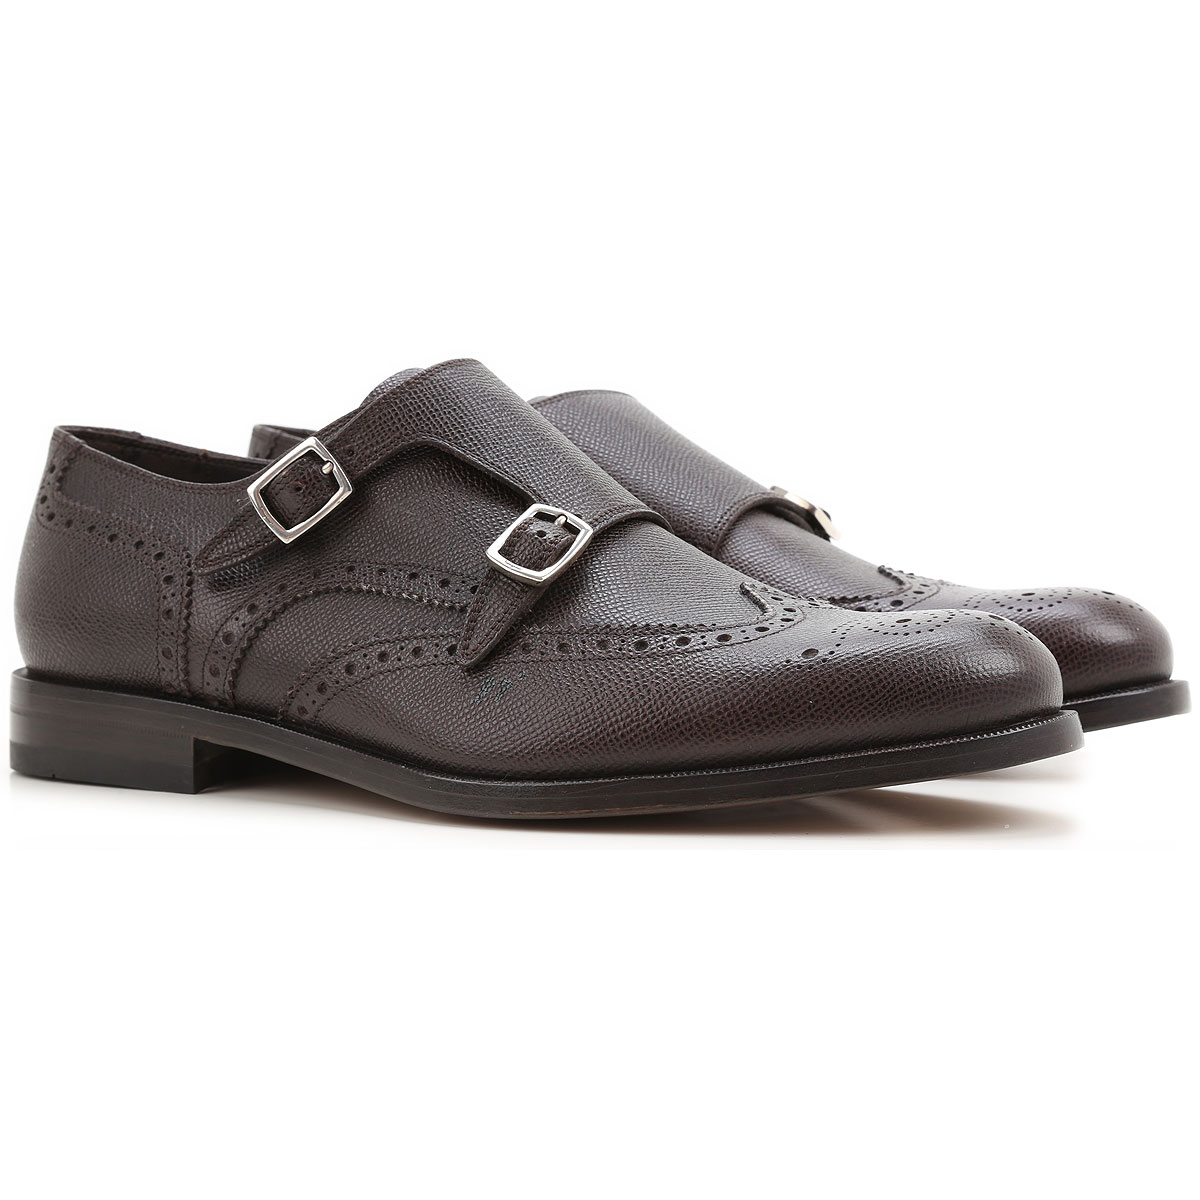 Mens Shoes Salvatore Ferragamo, Style code: 642008-giovanni-fondente